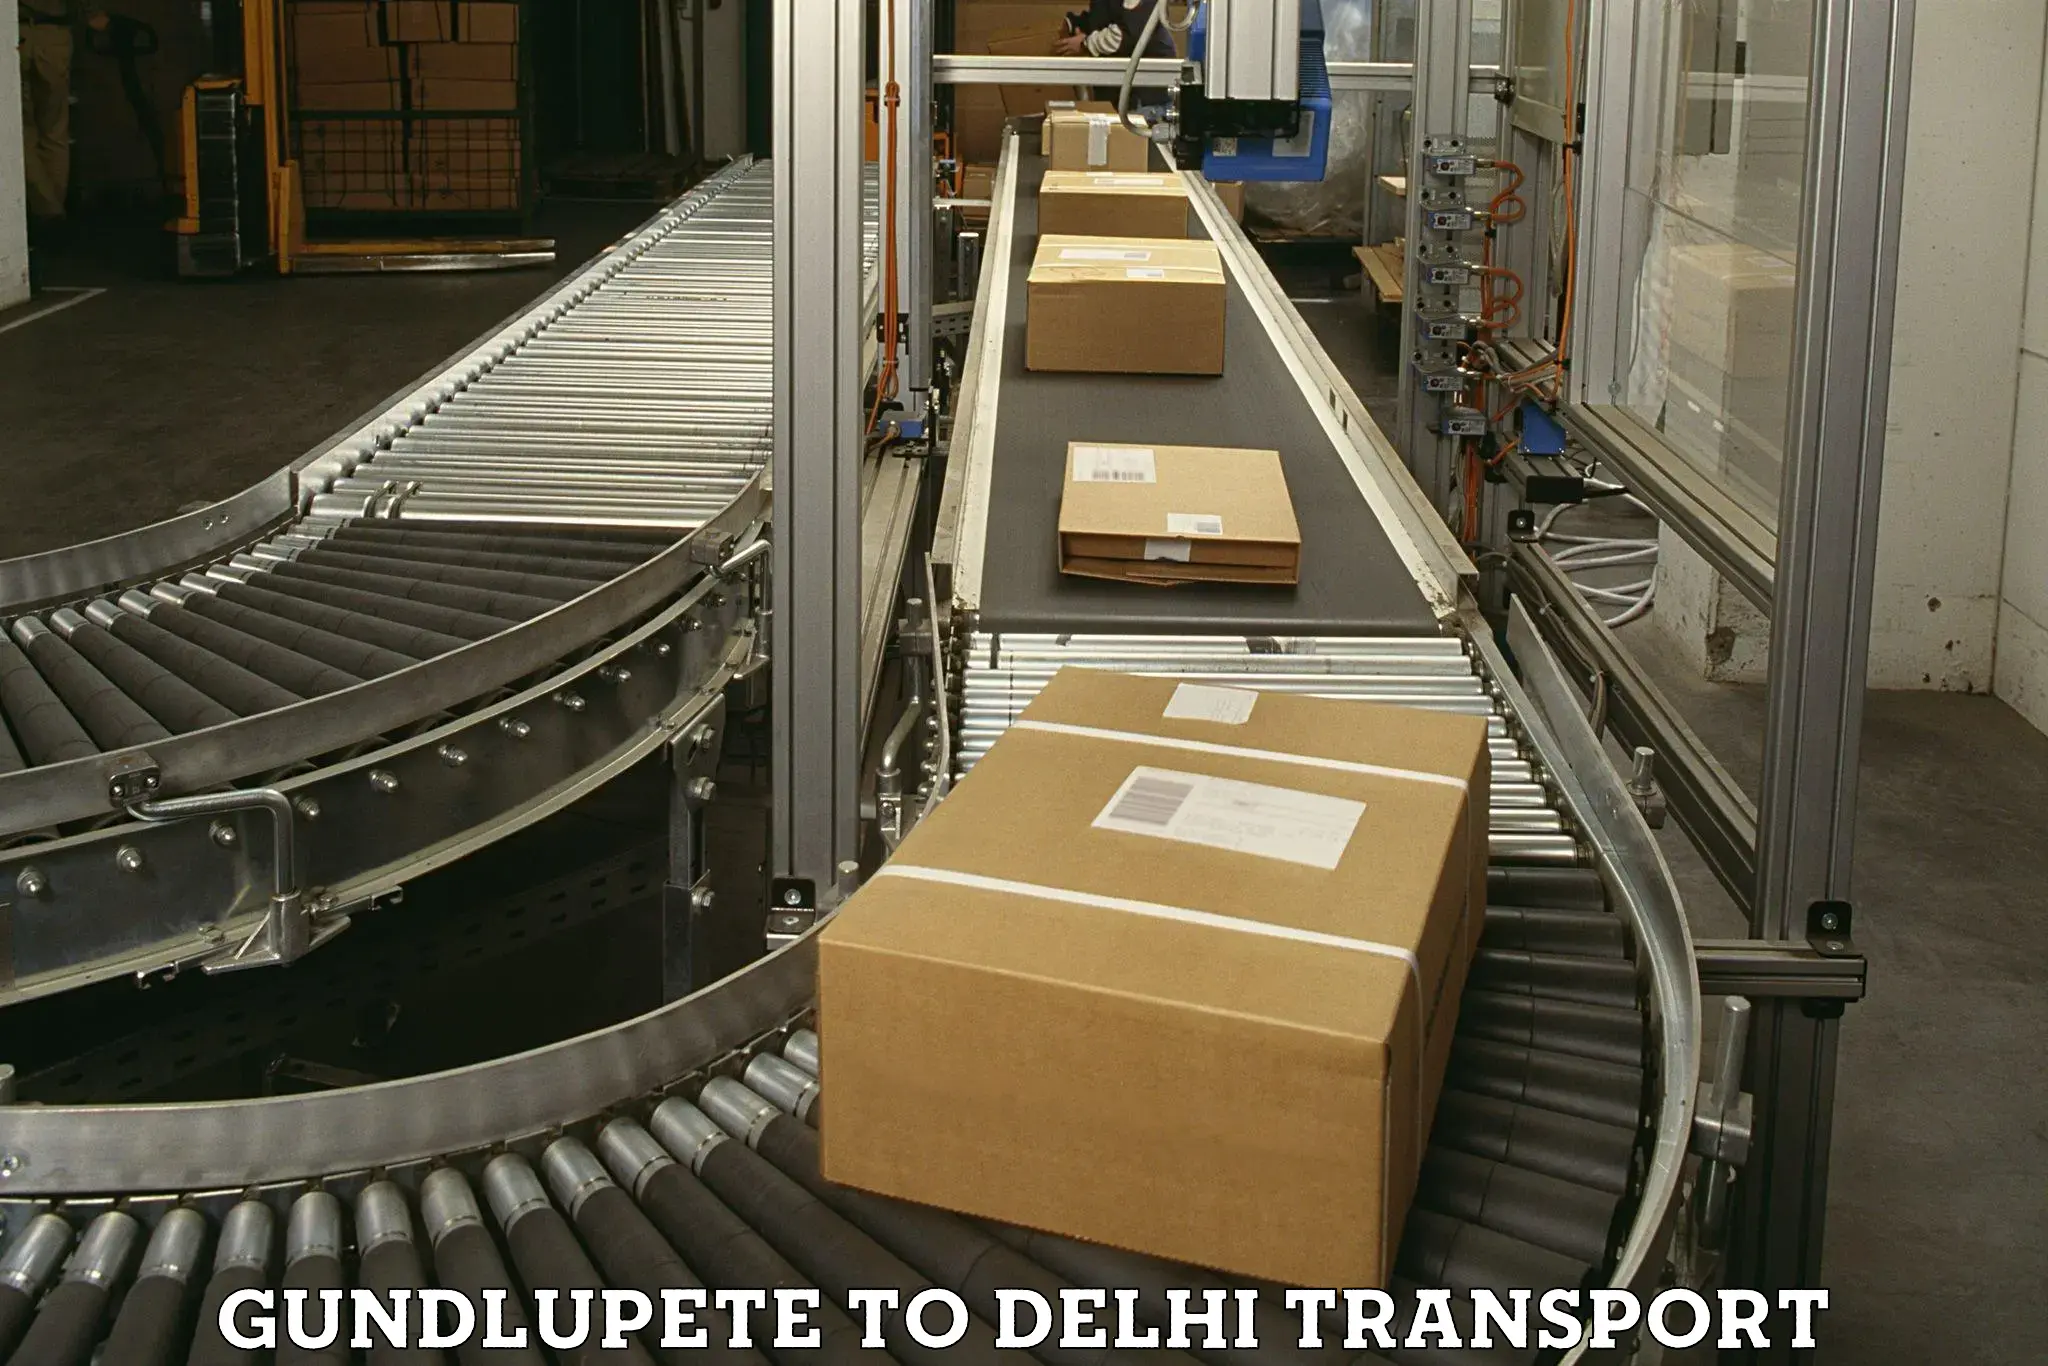 Goods transport services Gundlupete to IIT Delhi